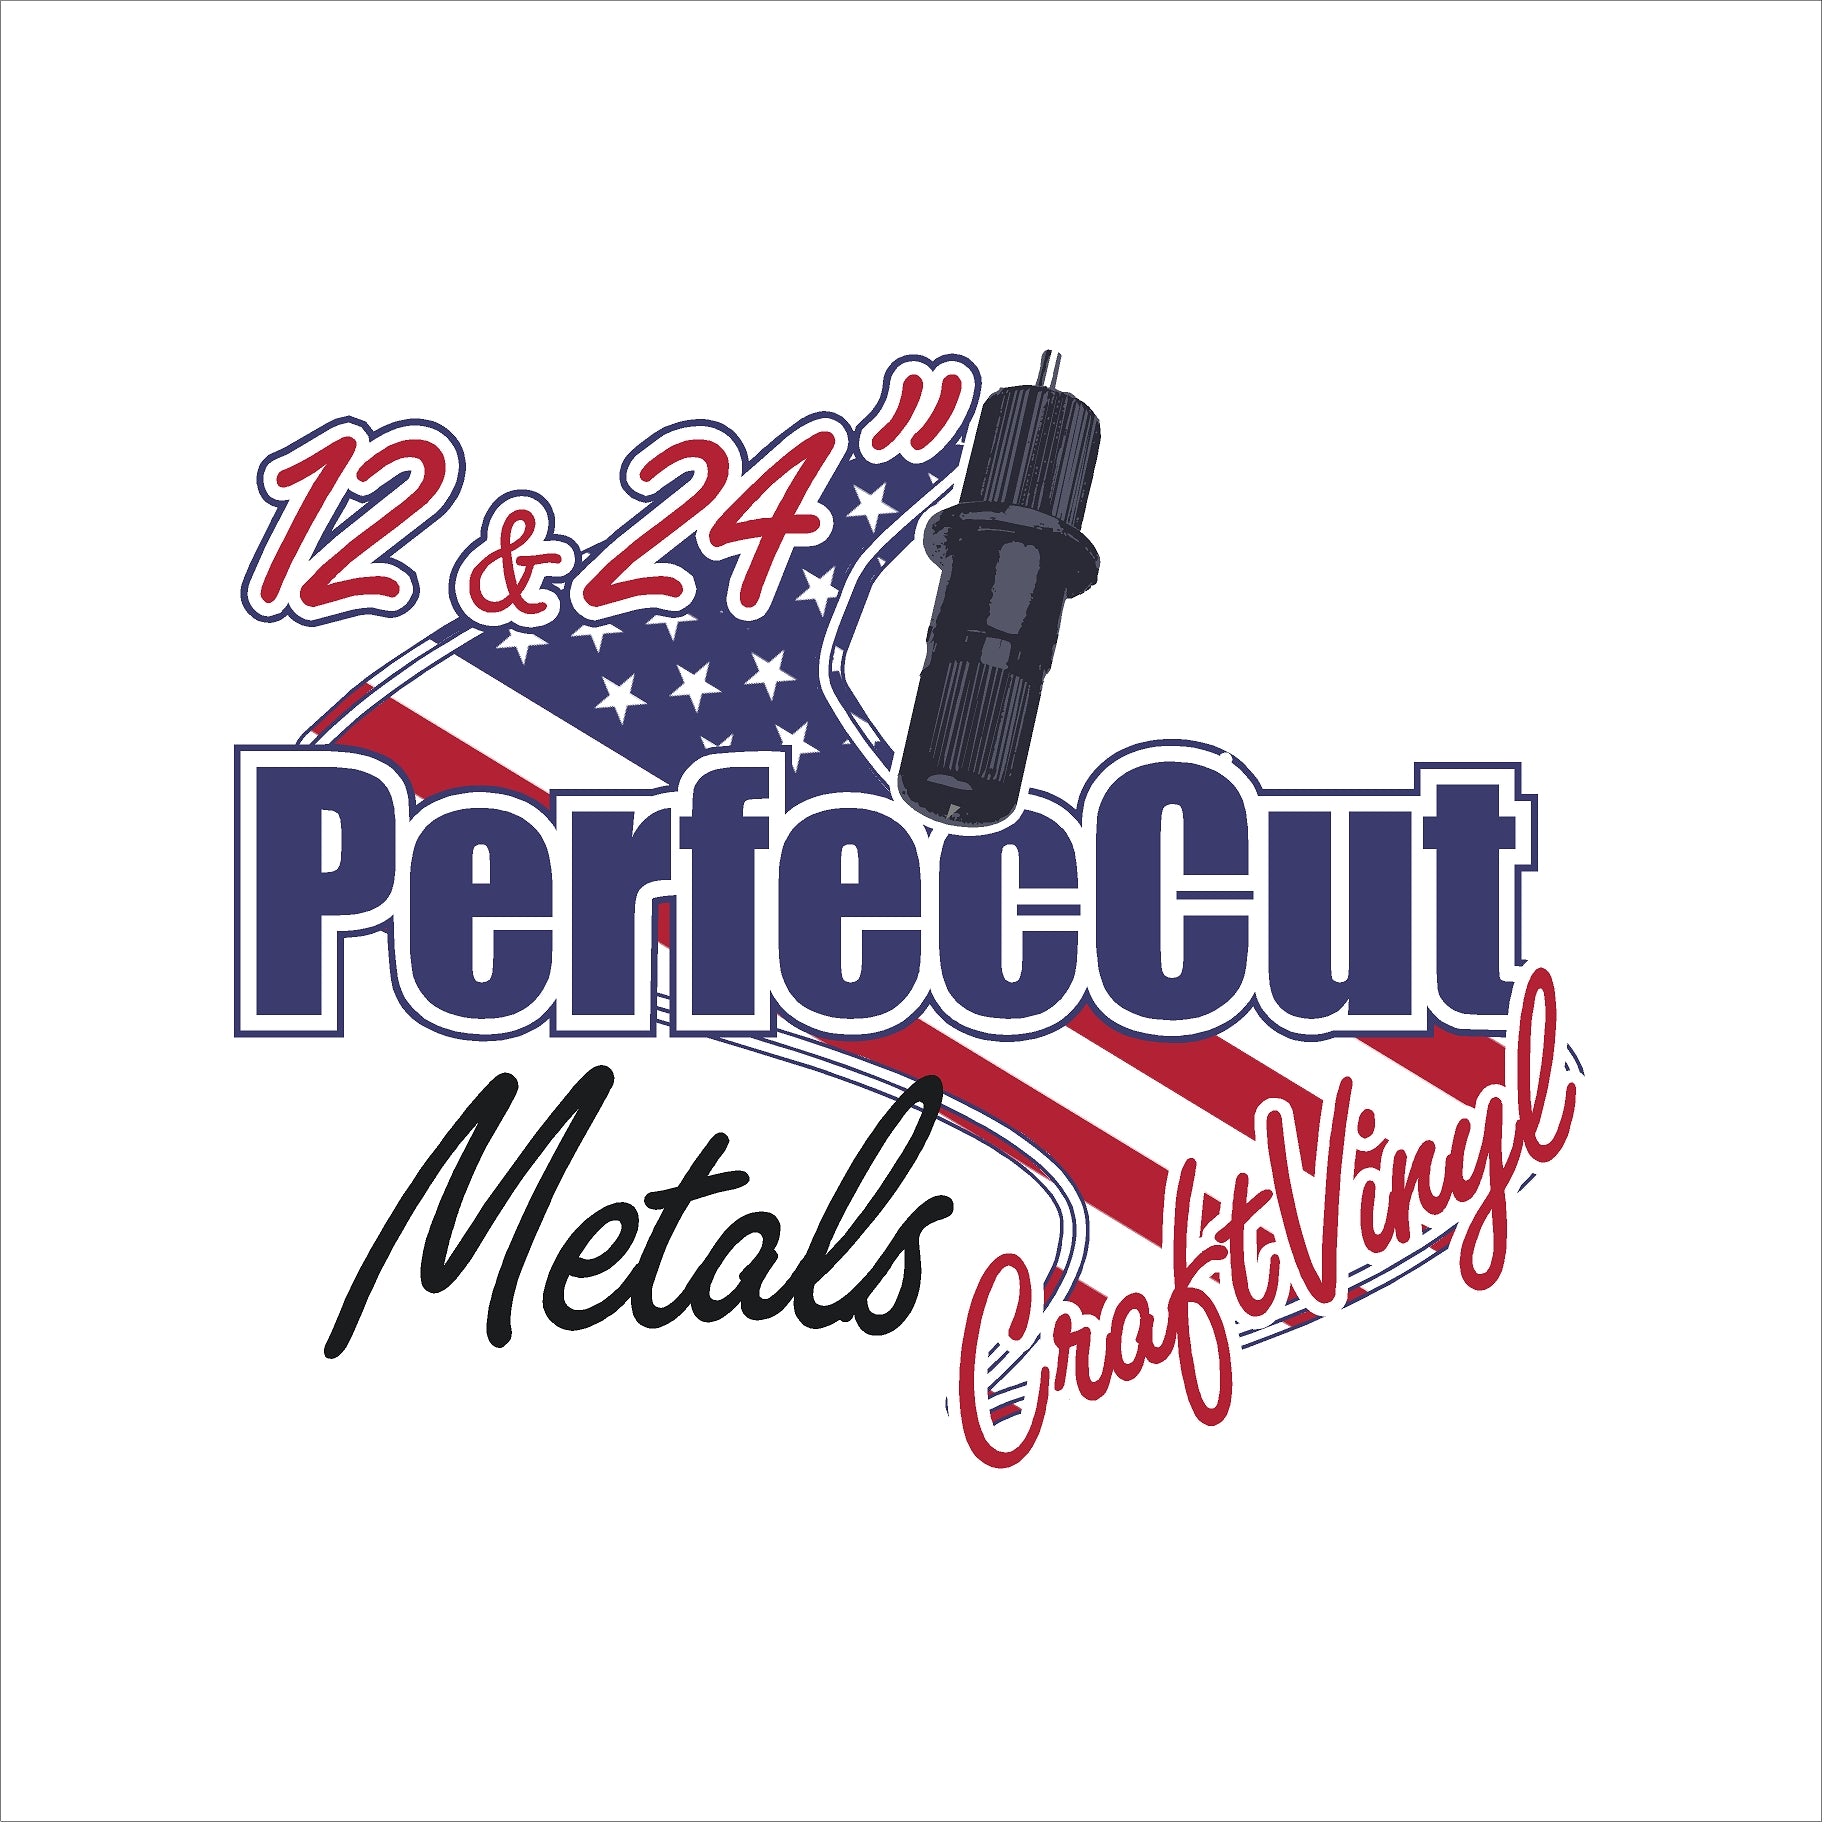 12" and 24" PerfecCut Metals Sticker Vinyl Sheets & Rolls